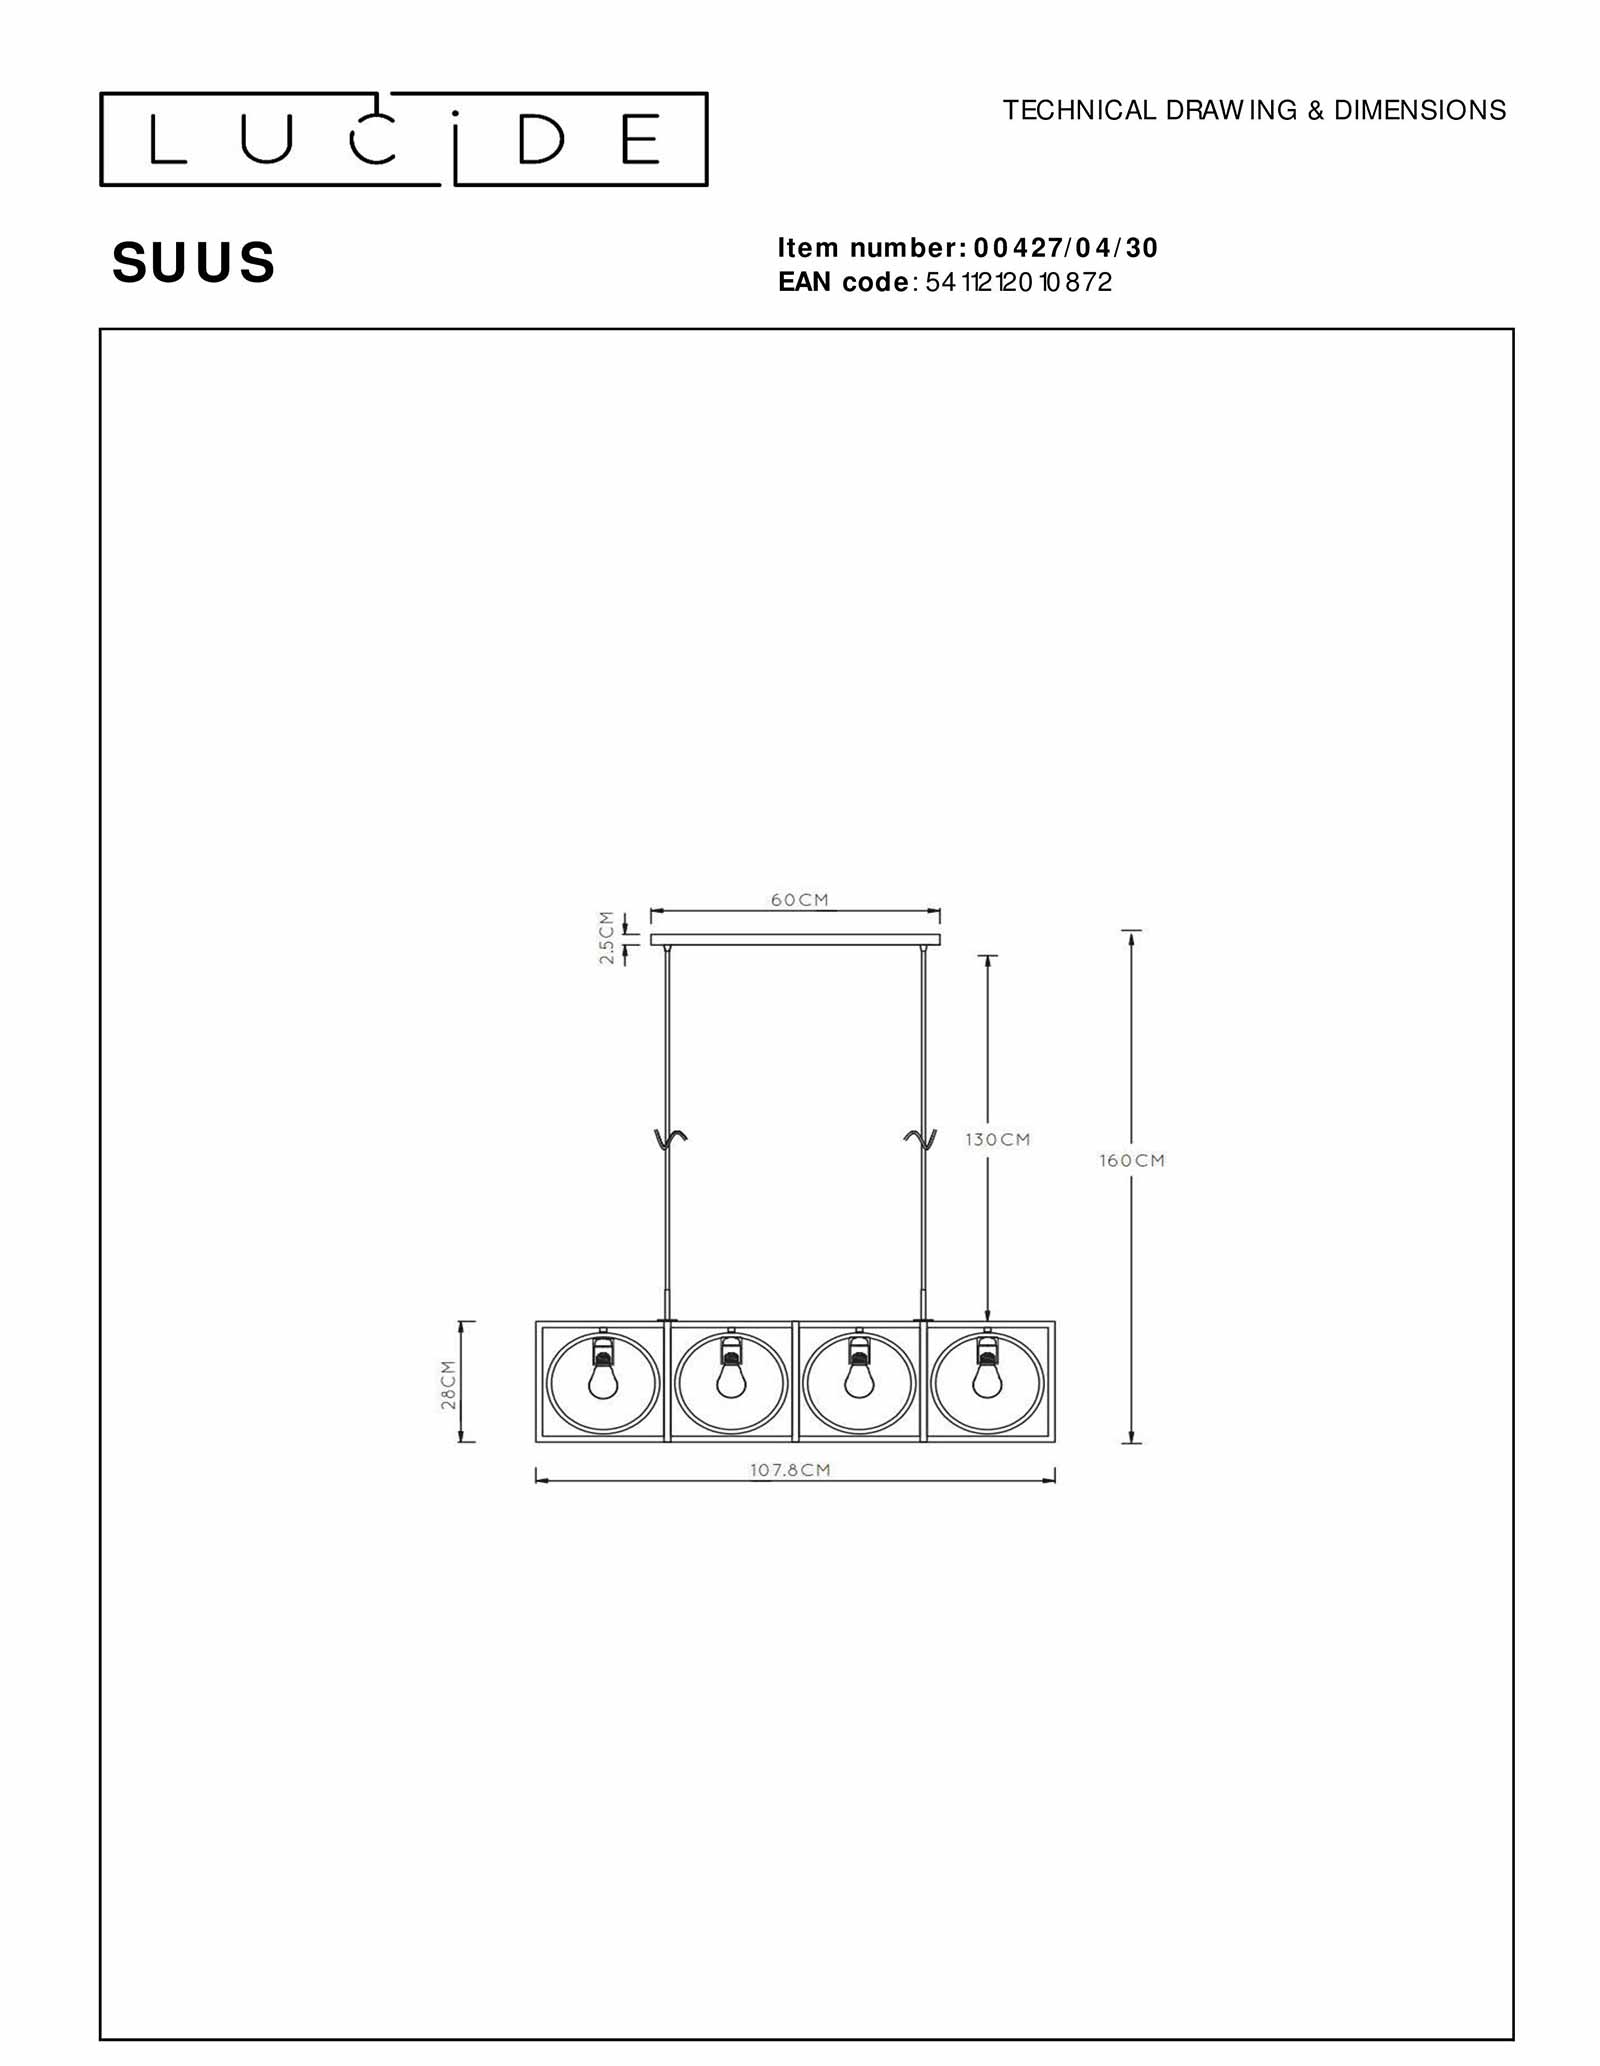 Lucide Suus Lampe a suspension 4xE27 Noir 00427 04 30 technical drawing